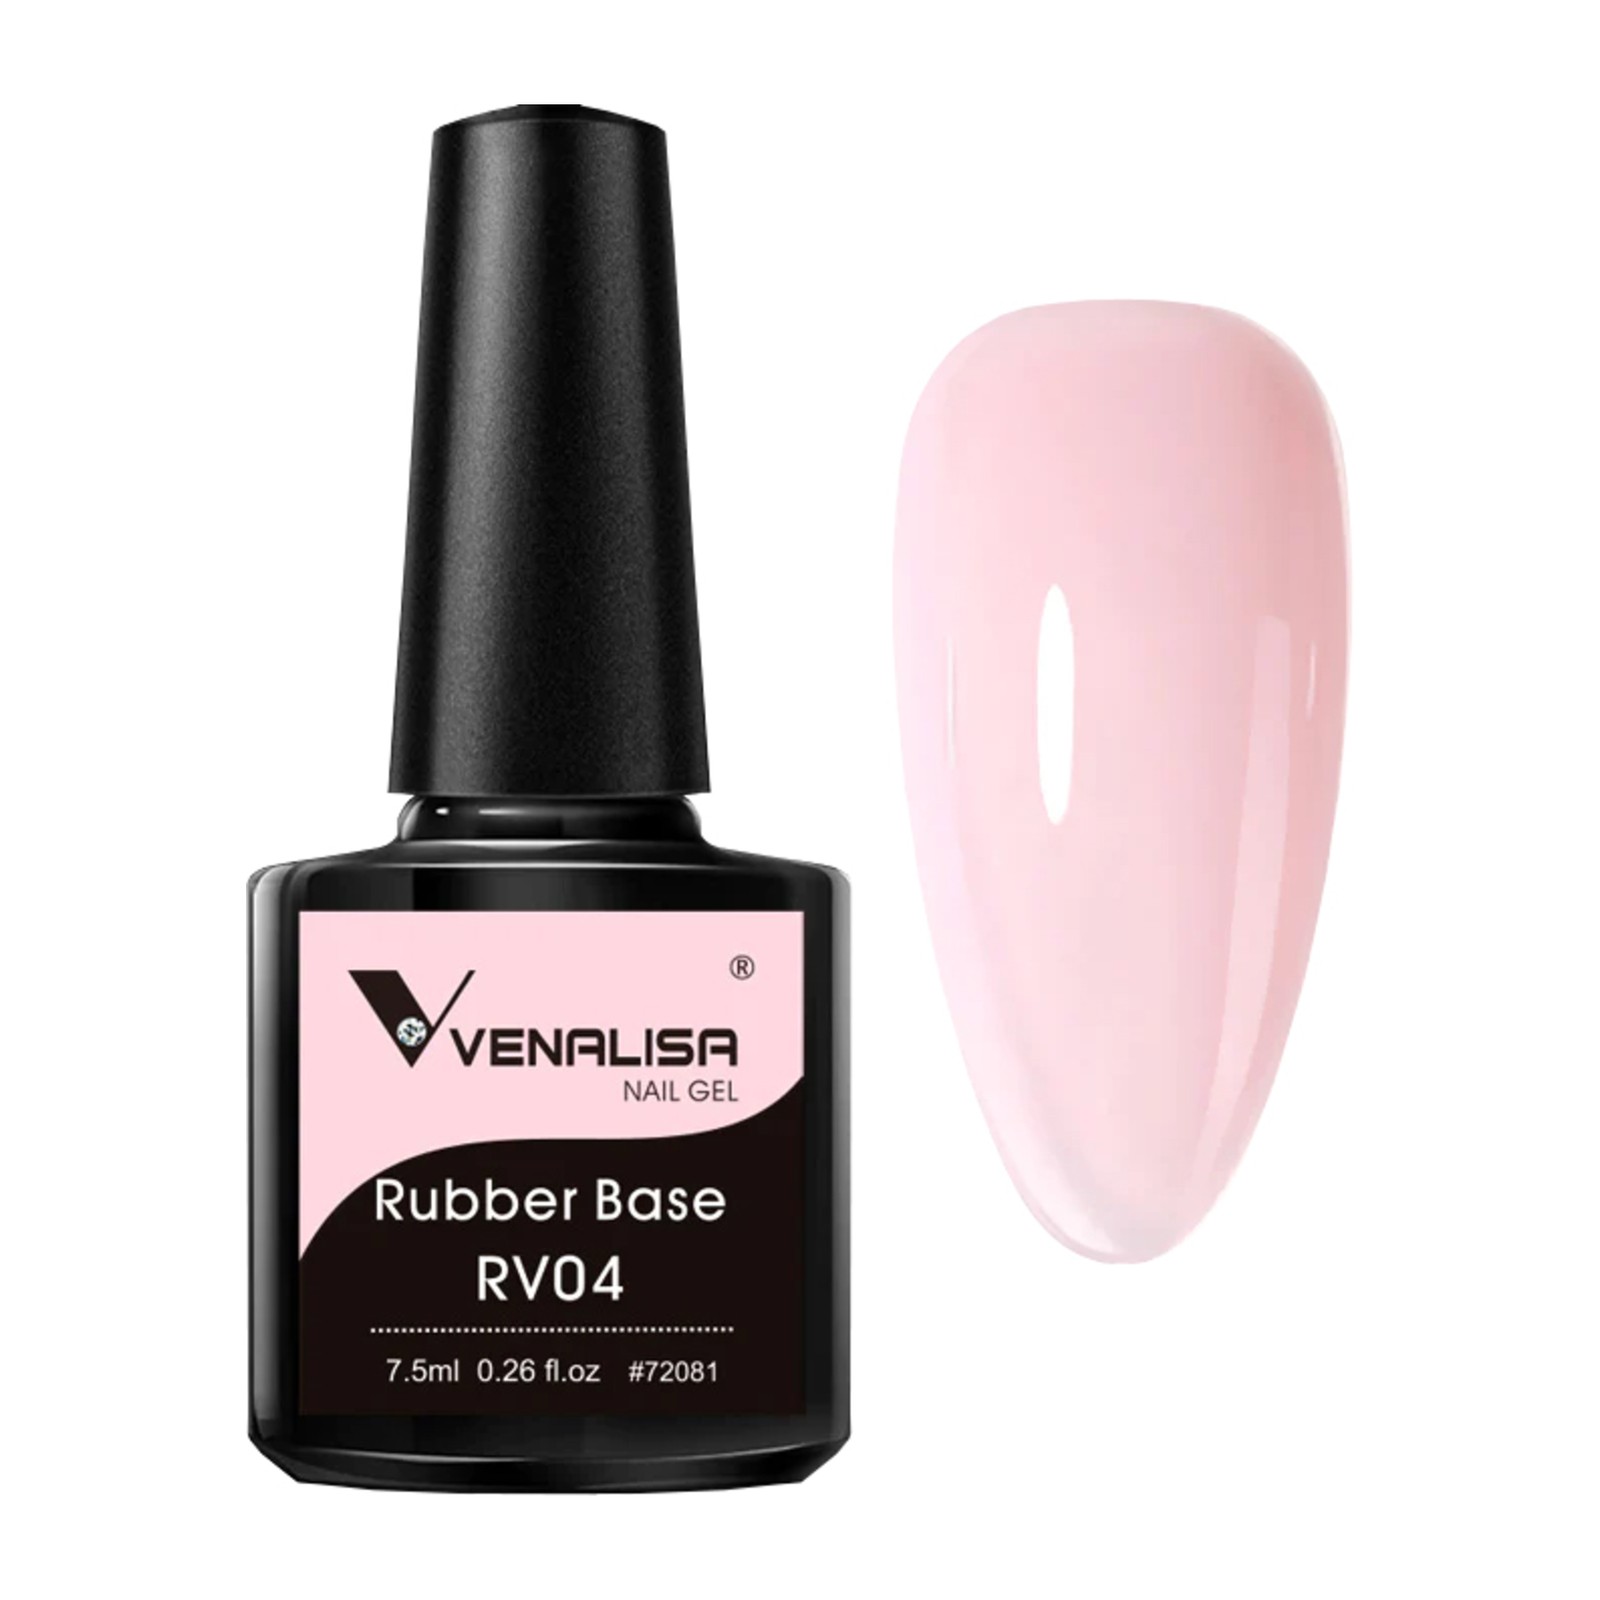 Venalisa - Rubber Base RV04 - 7.5ml